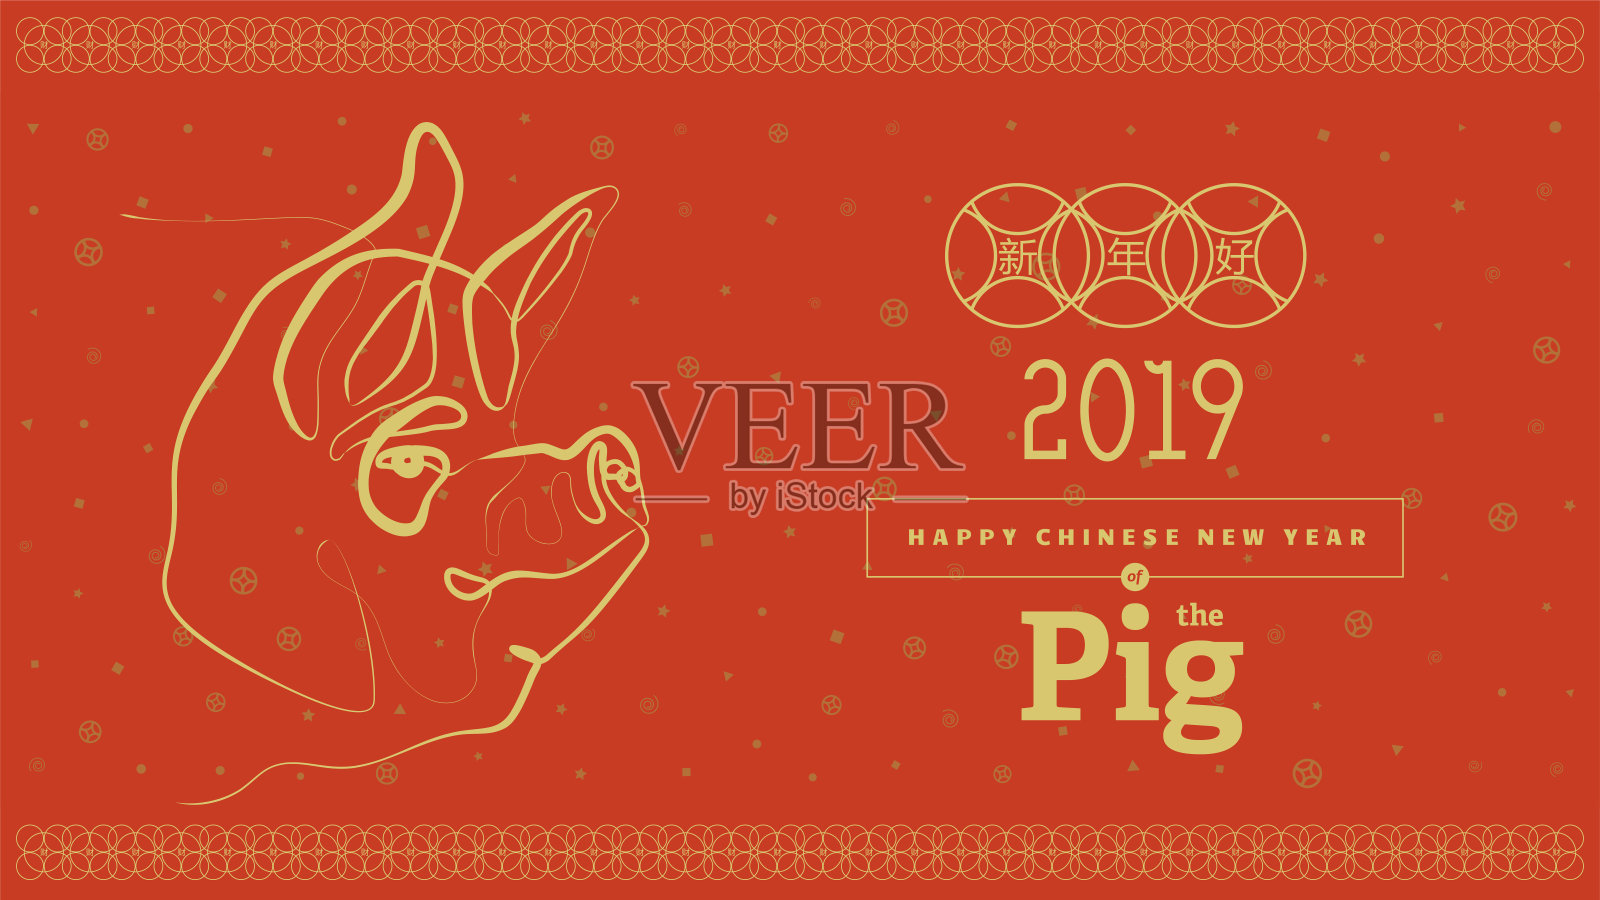 矢量插图。2019年新年快乐设计模板，亚洲农历年。象形文字的意思是新年快乐。设计模板素材